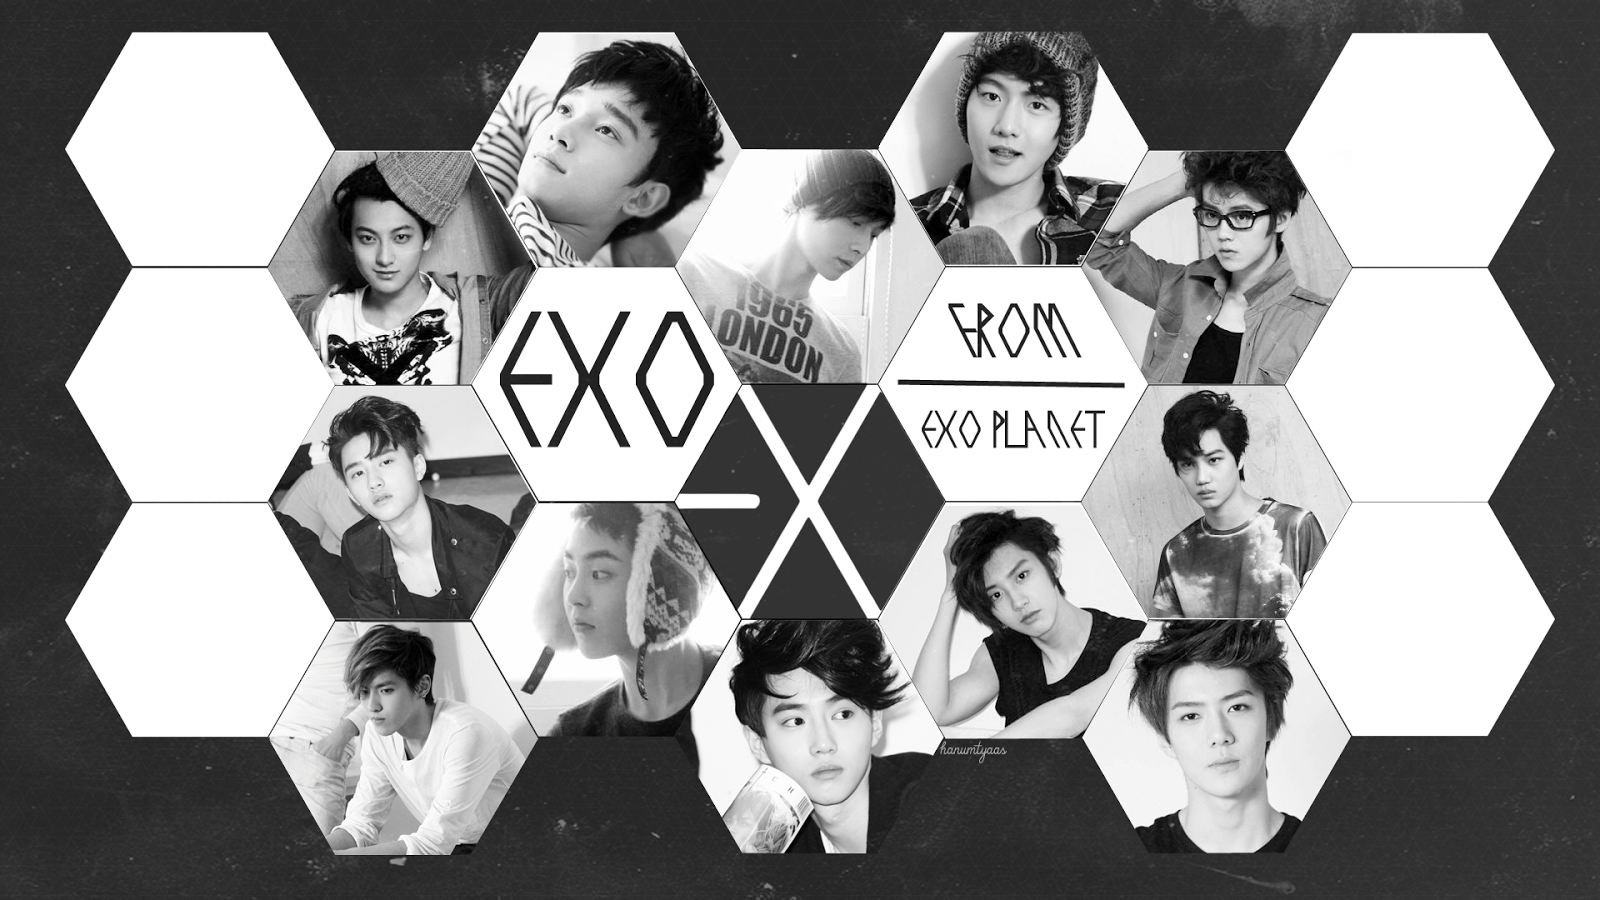 EXO Logo Wallpapers - bigbeamng